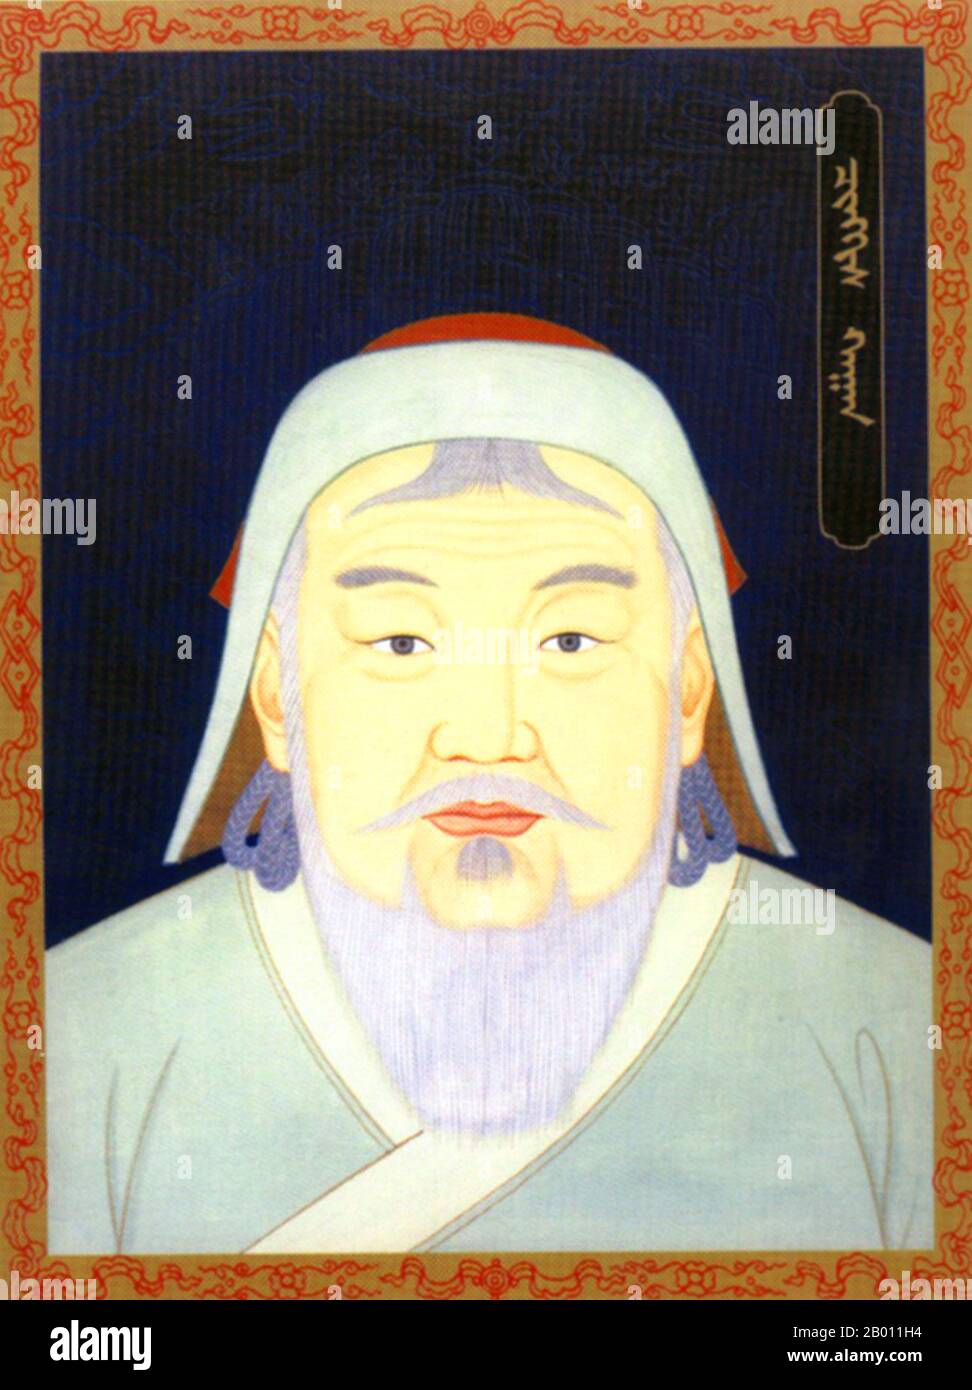 Mongolei: Dschingis Khan (r. 1206-1227), 1. Khagan des mongolischen Reiches, 20. Jahrhundert. Dschingis Khan (1162–1227), Borjigin Temujin geboren, war der Gründer, Khan (Herrscher) und Khagan (Kaiser) des mongolischen Reiches, das nach seinem Tod zum größten zusammenhängenden Reich der Geschichte wurde. Er kam an die Macht, indem er viele der nomadischen Stämme Nordostasiens vereinte. Nach der Gründung des mongolischen Reiches und der Proklamation "Dschingis Khan" begann er die mongolischen Invasionen, die letztlich zur Eroberung des größten Teil Eurasiens führen würden. Stockfoto